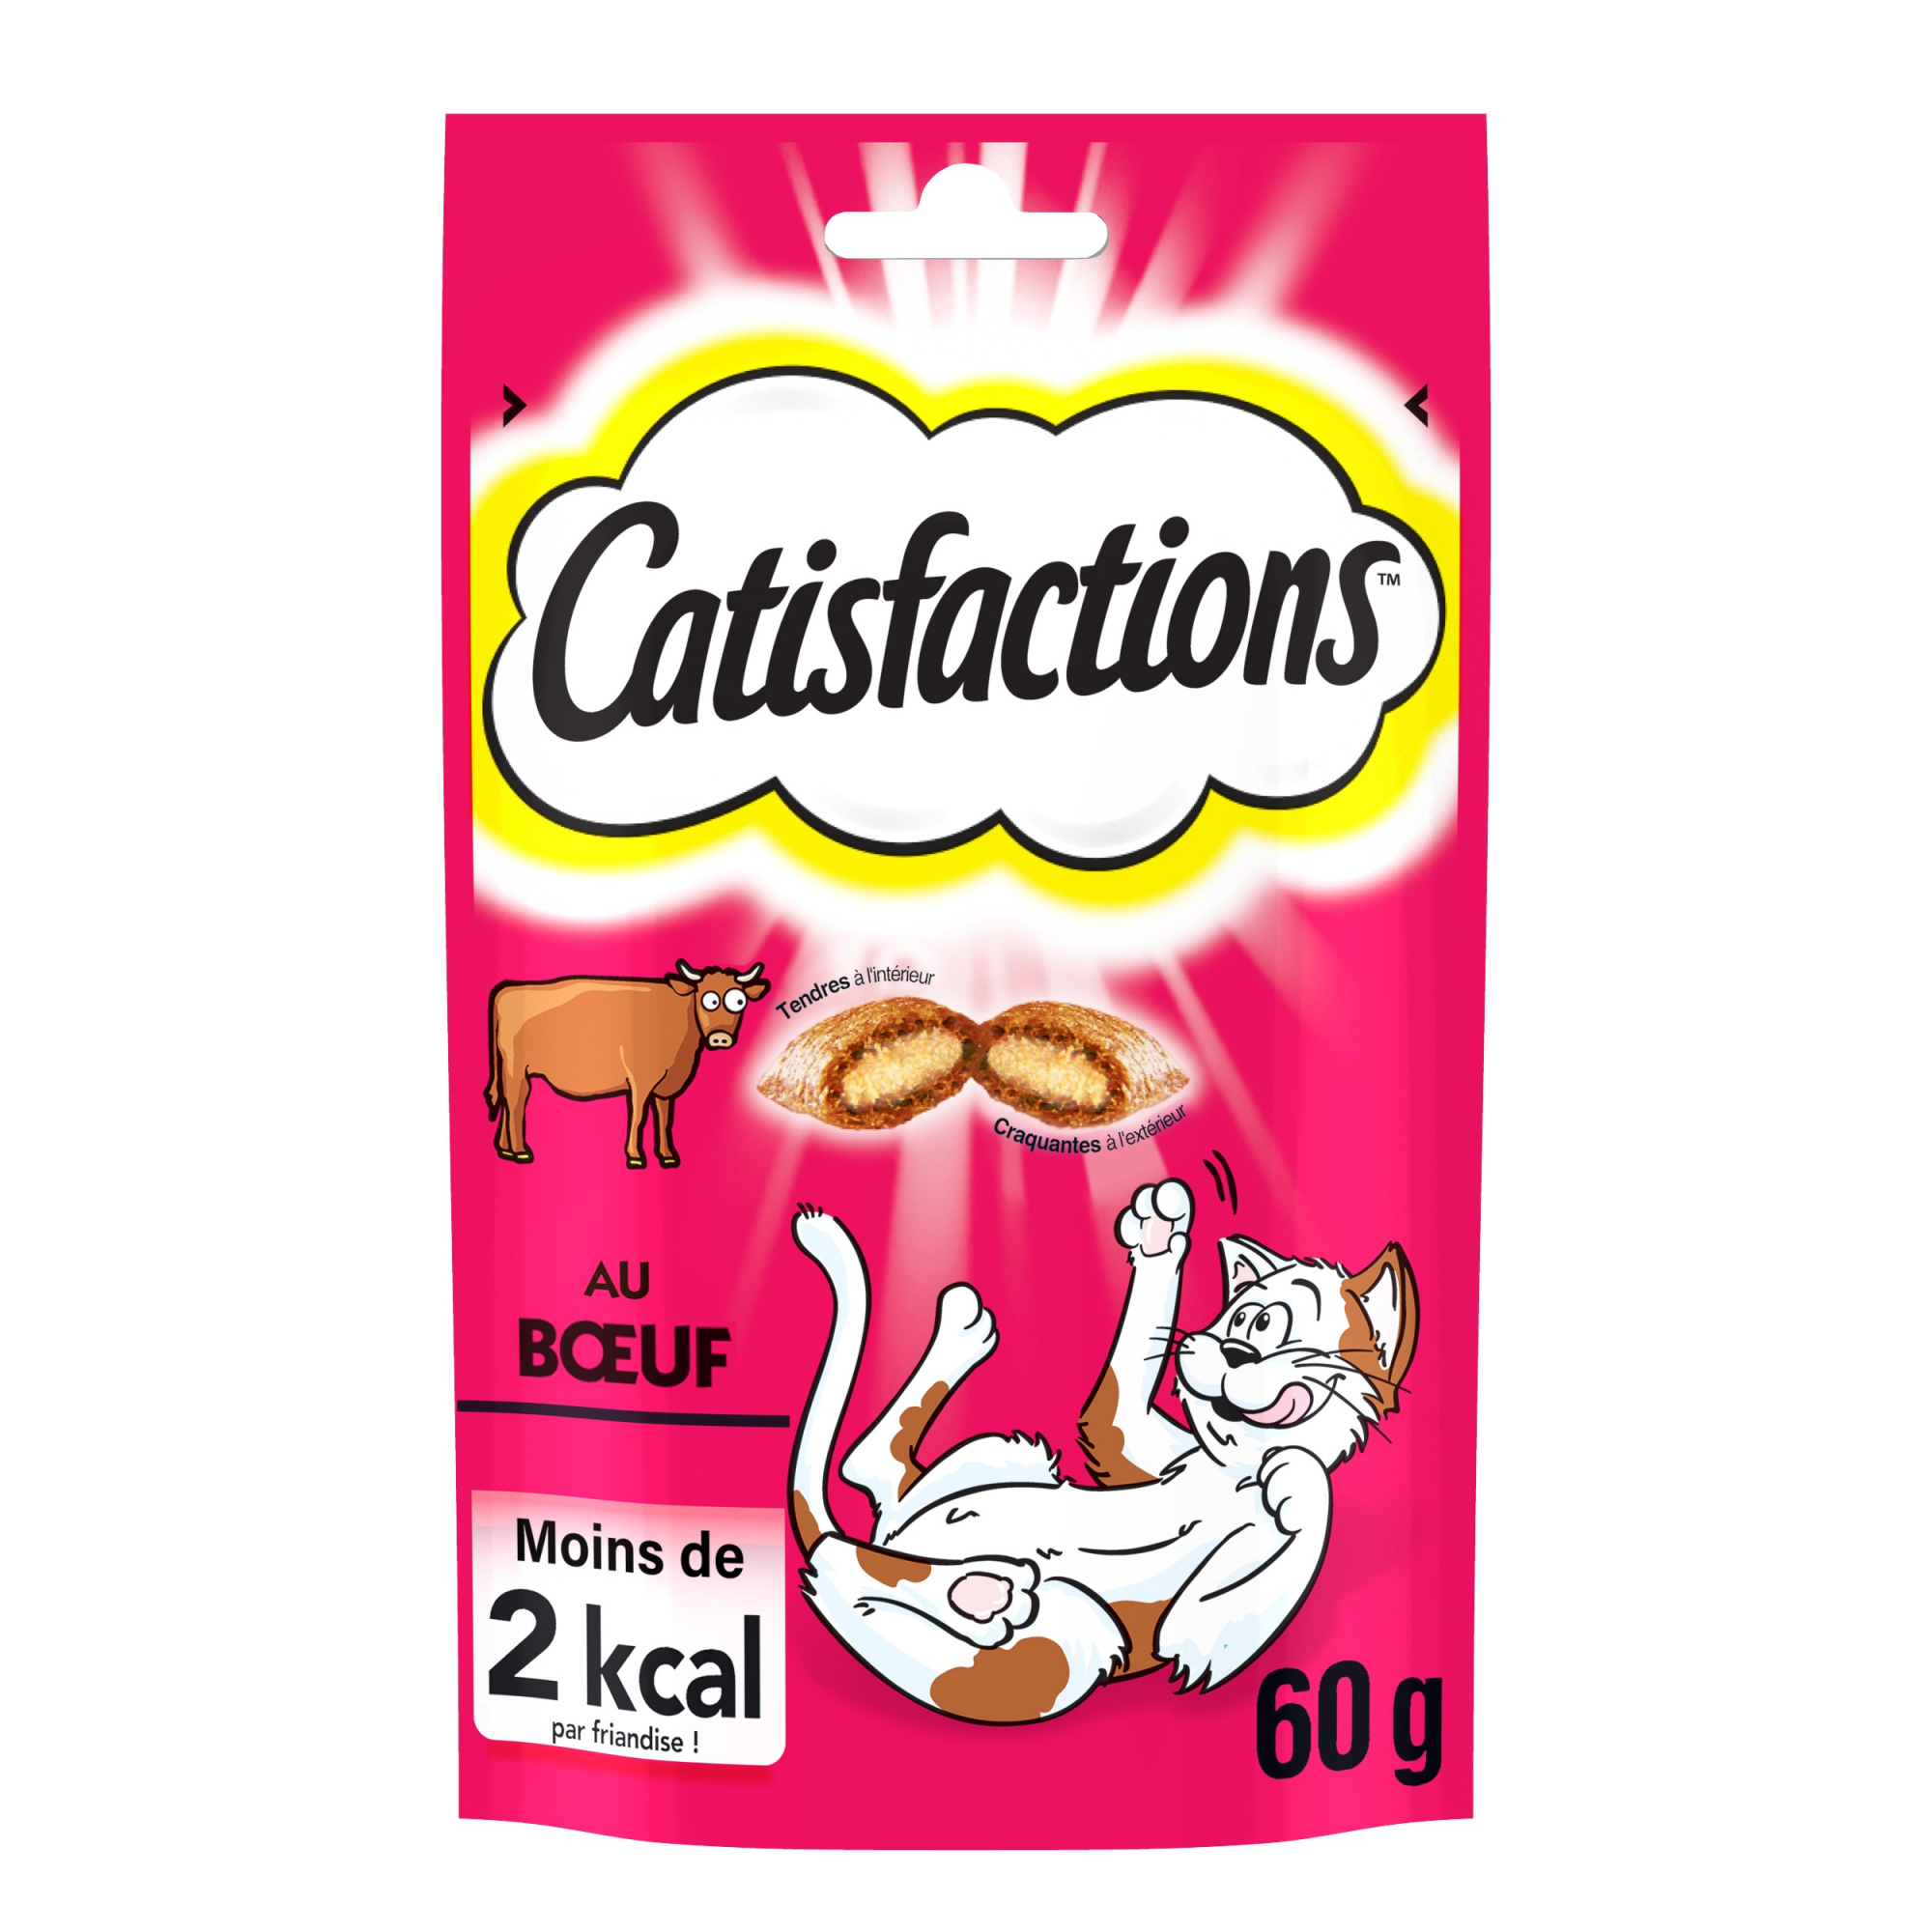 Snacks Catisfactions met rundvlees voor katten en kittens